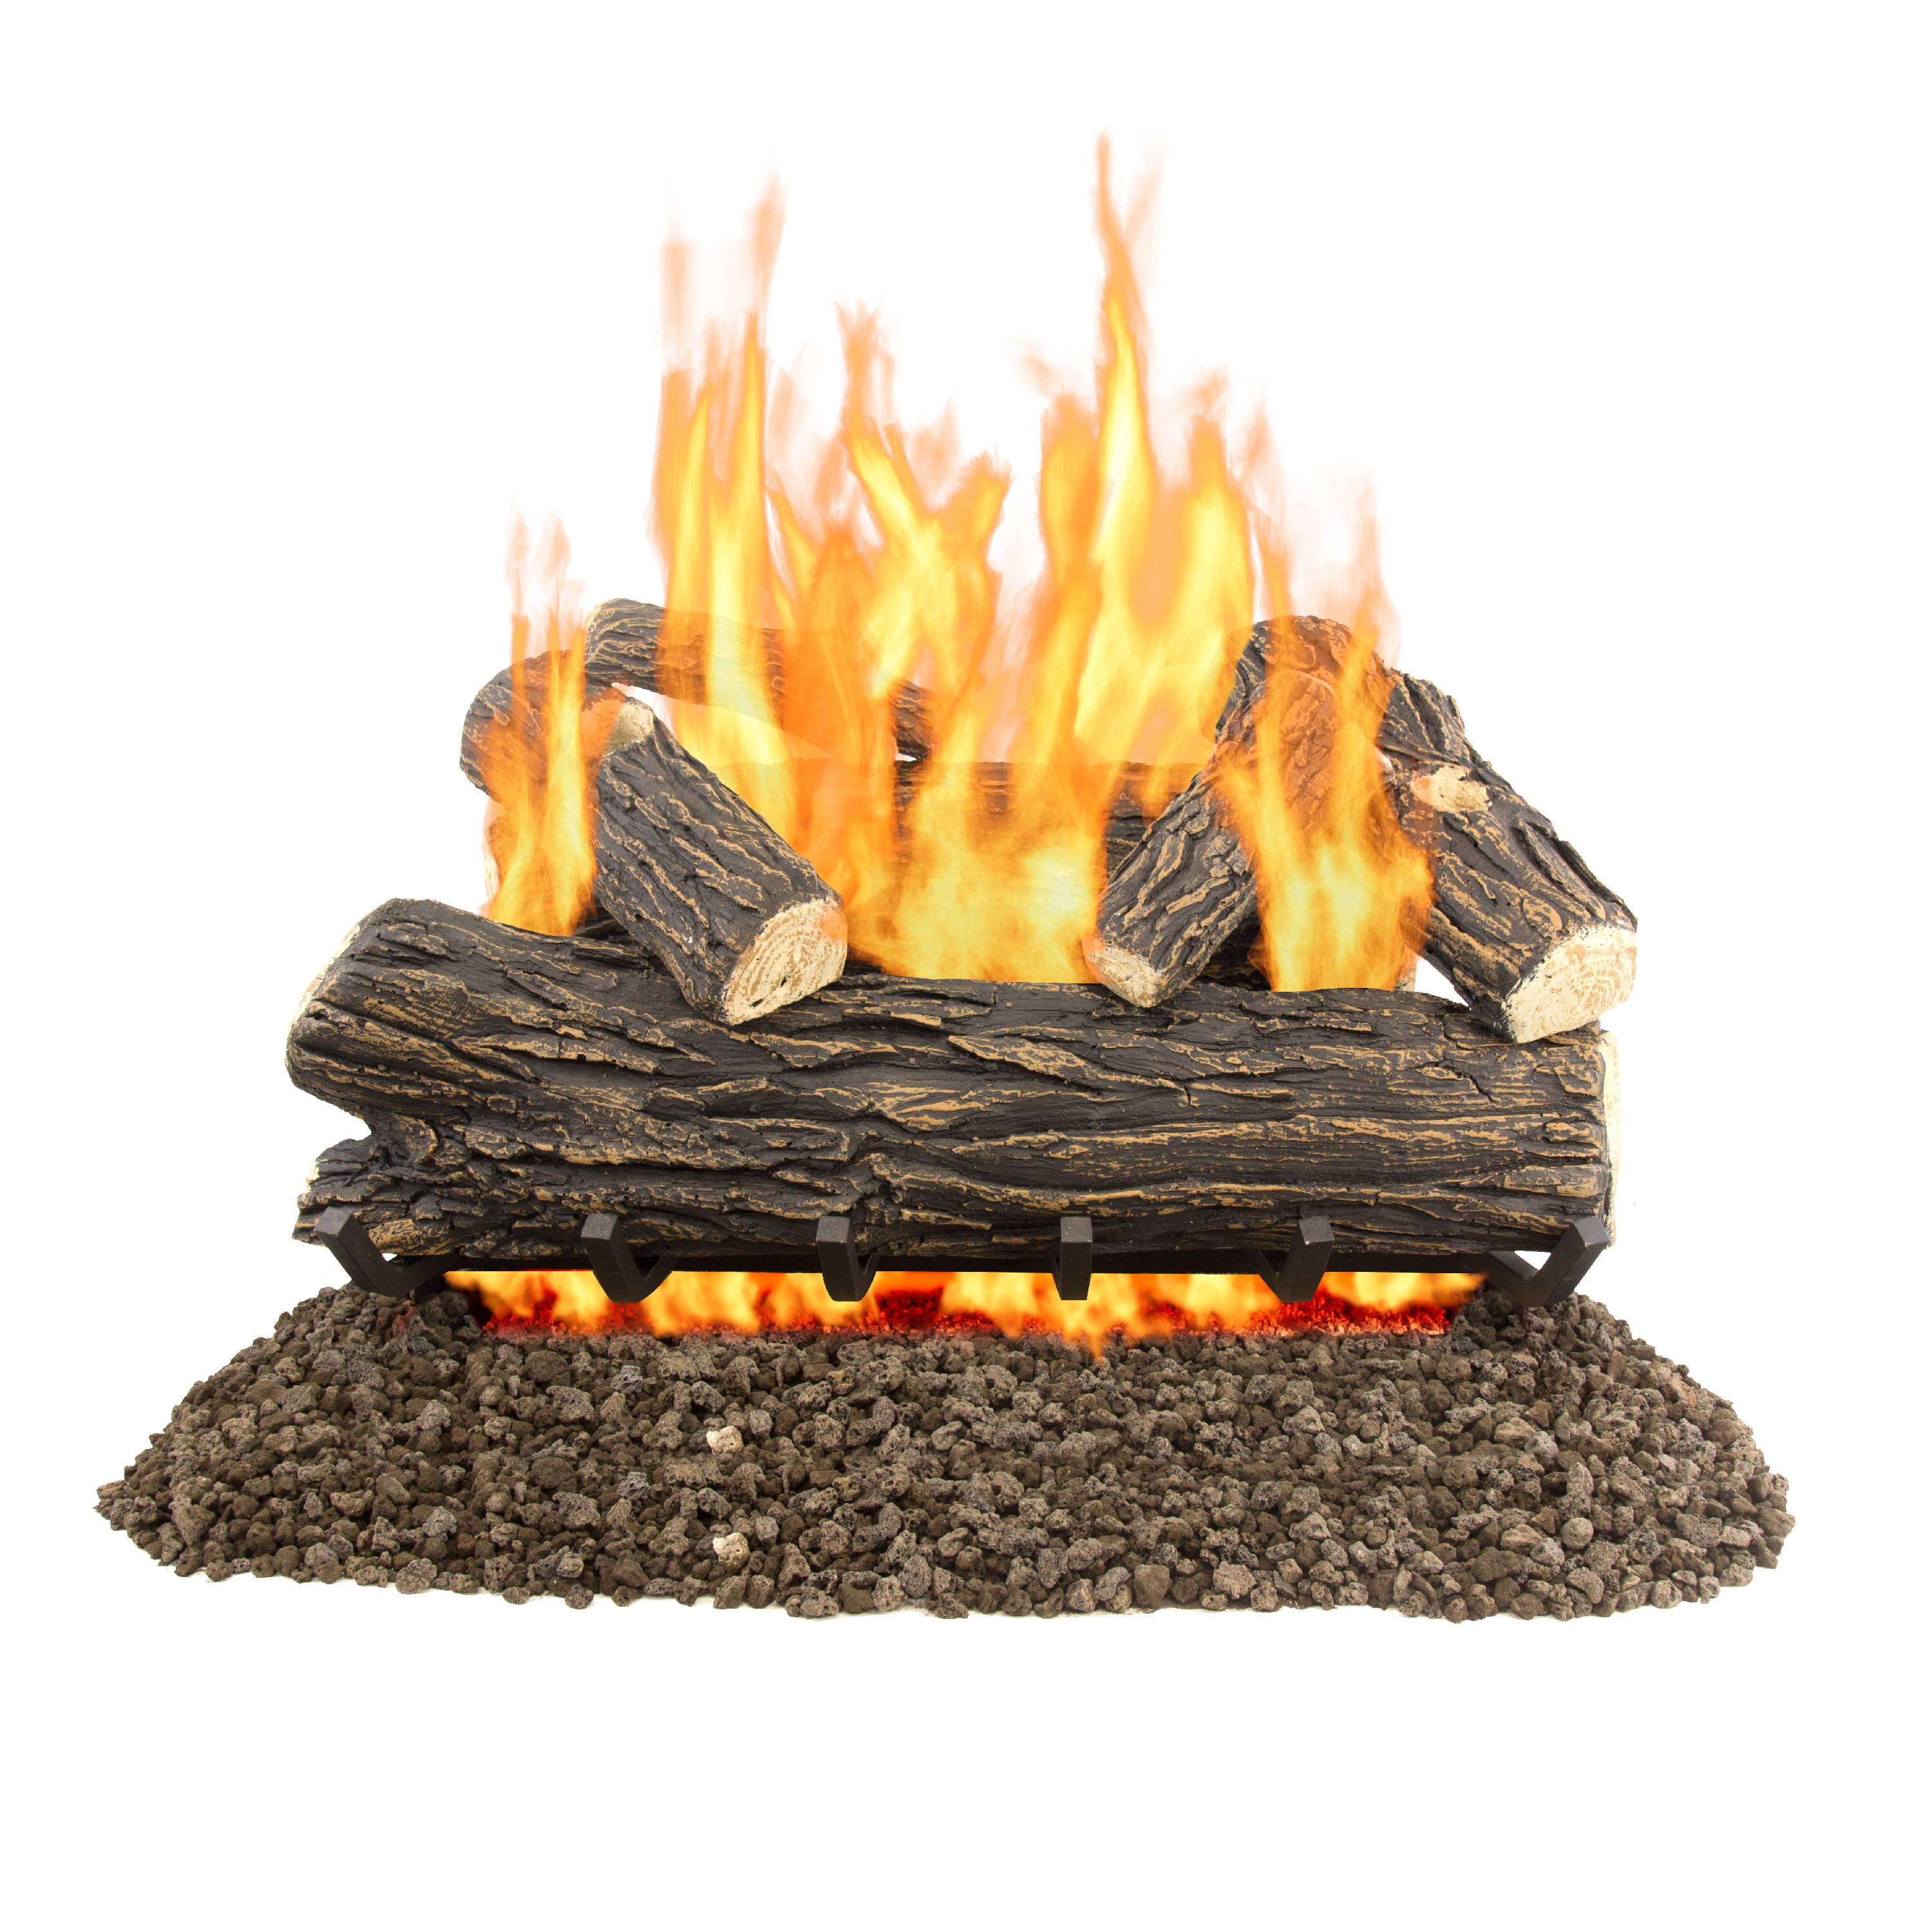 24 In Split Oak Vented Natural Gas Log Set Dual Burner Chimney Fireplace Fire 